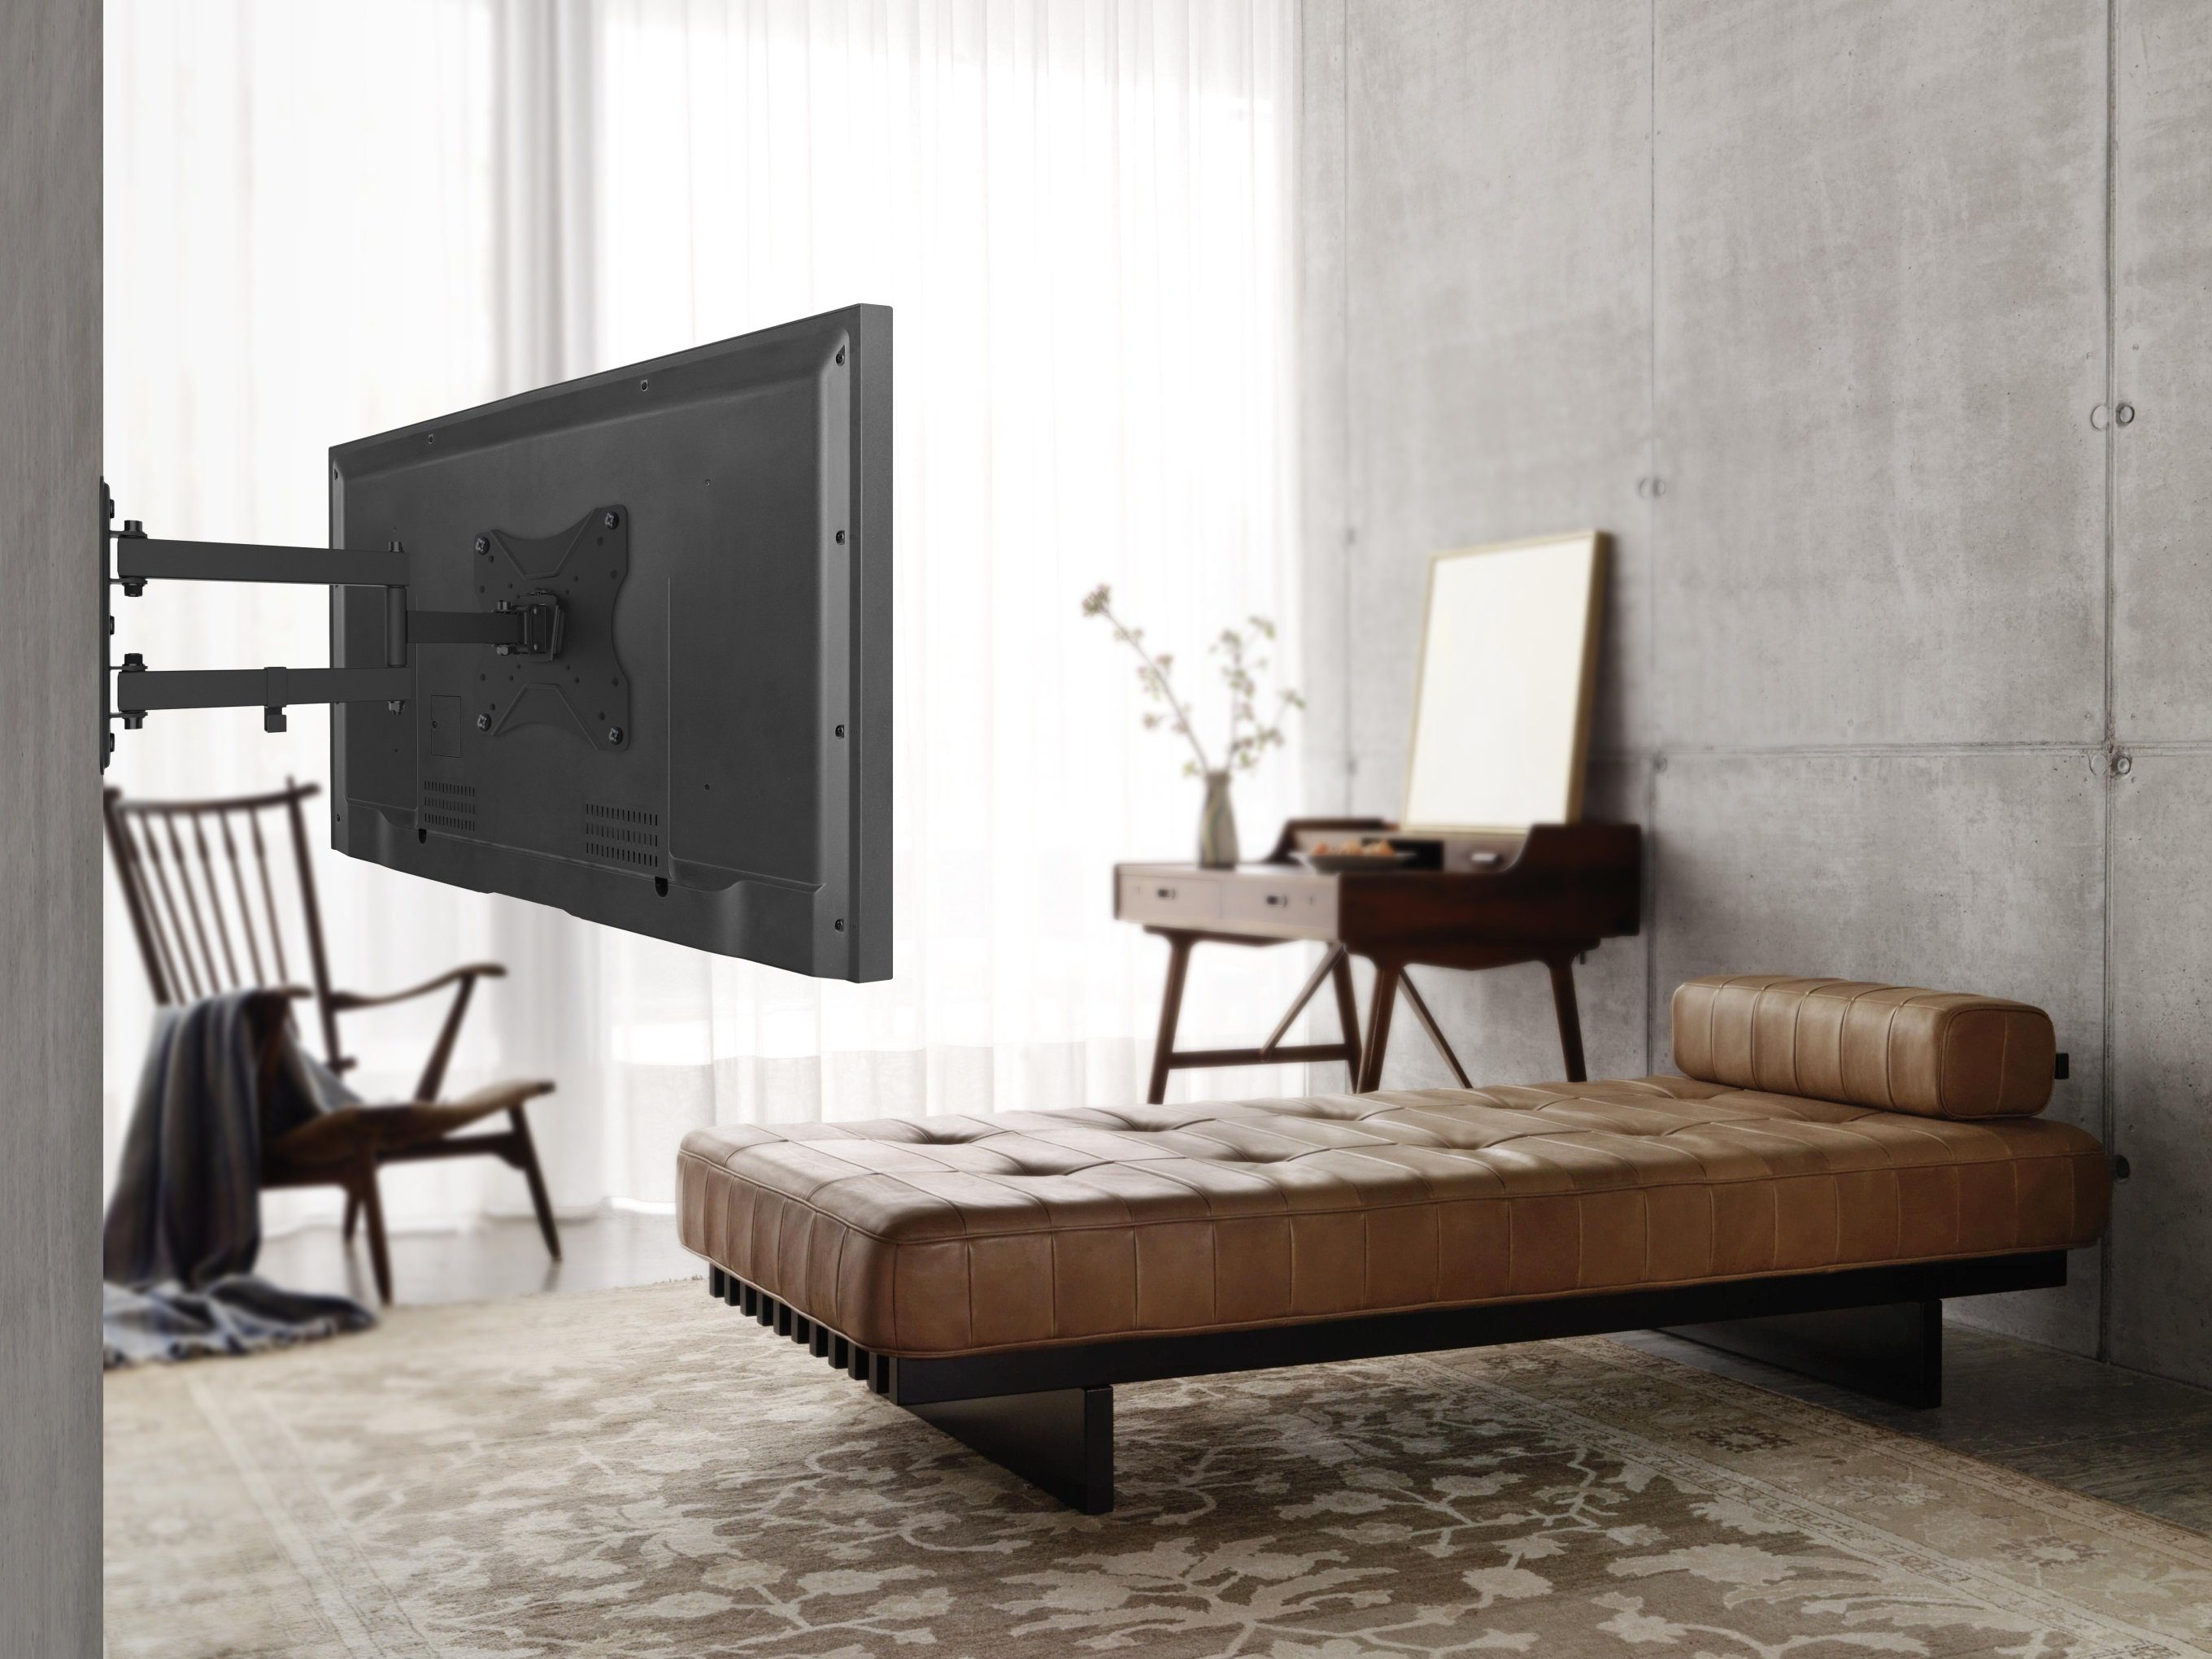 RICOO S7222 Wand Zoll, VESA (bis ausziehbar 200x200) Fernseher neigbar schwenkbar TV-Wandhalterung, 42 Halter